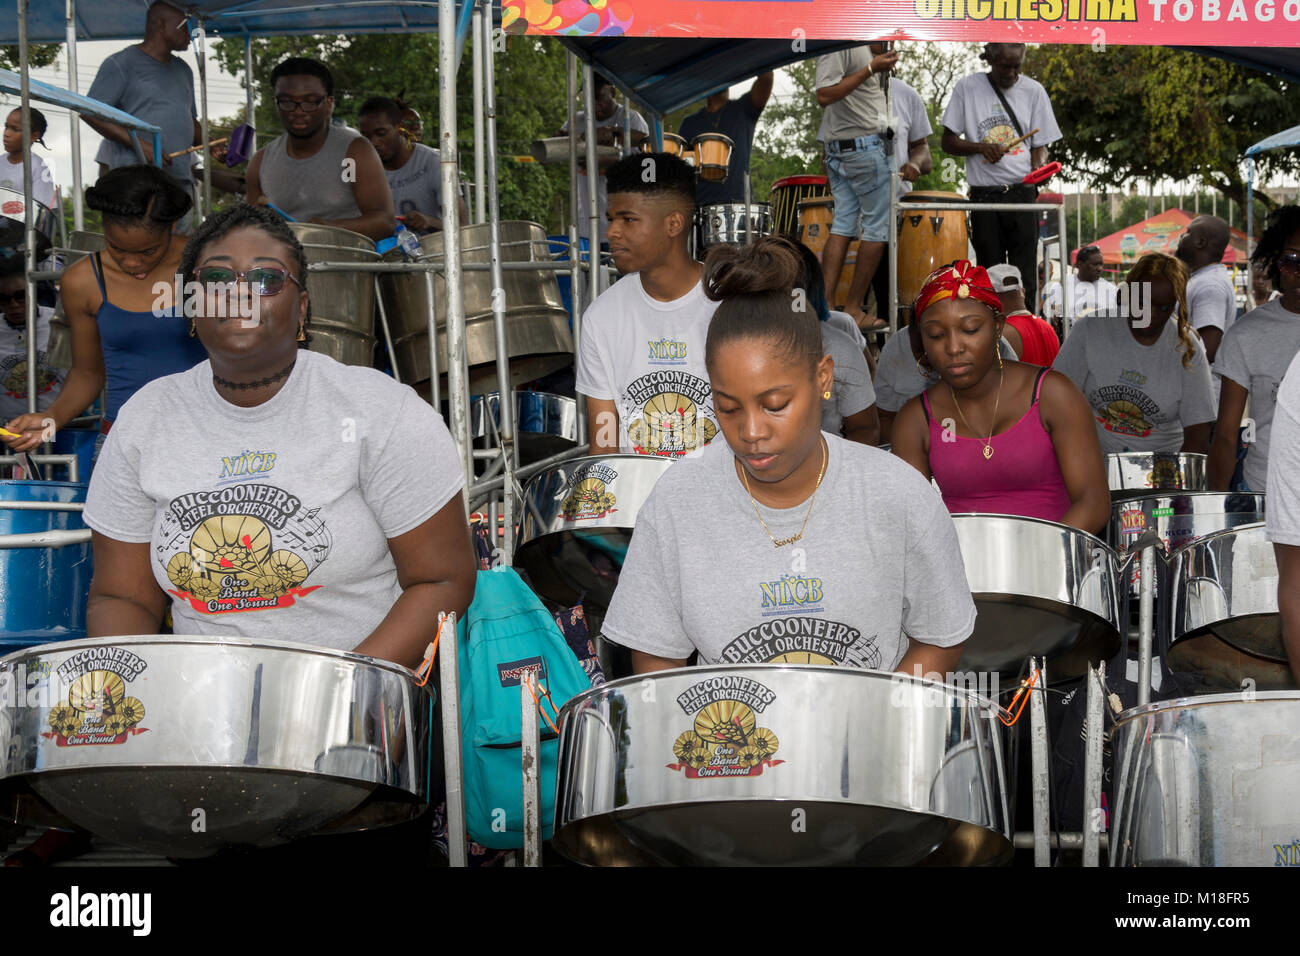 Bands vorbereiten, bevor sie auf der Bühne an der jährlichen Panorama Wettbewerb im Queen's Park Savannah, Trinidad. Stockfoto